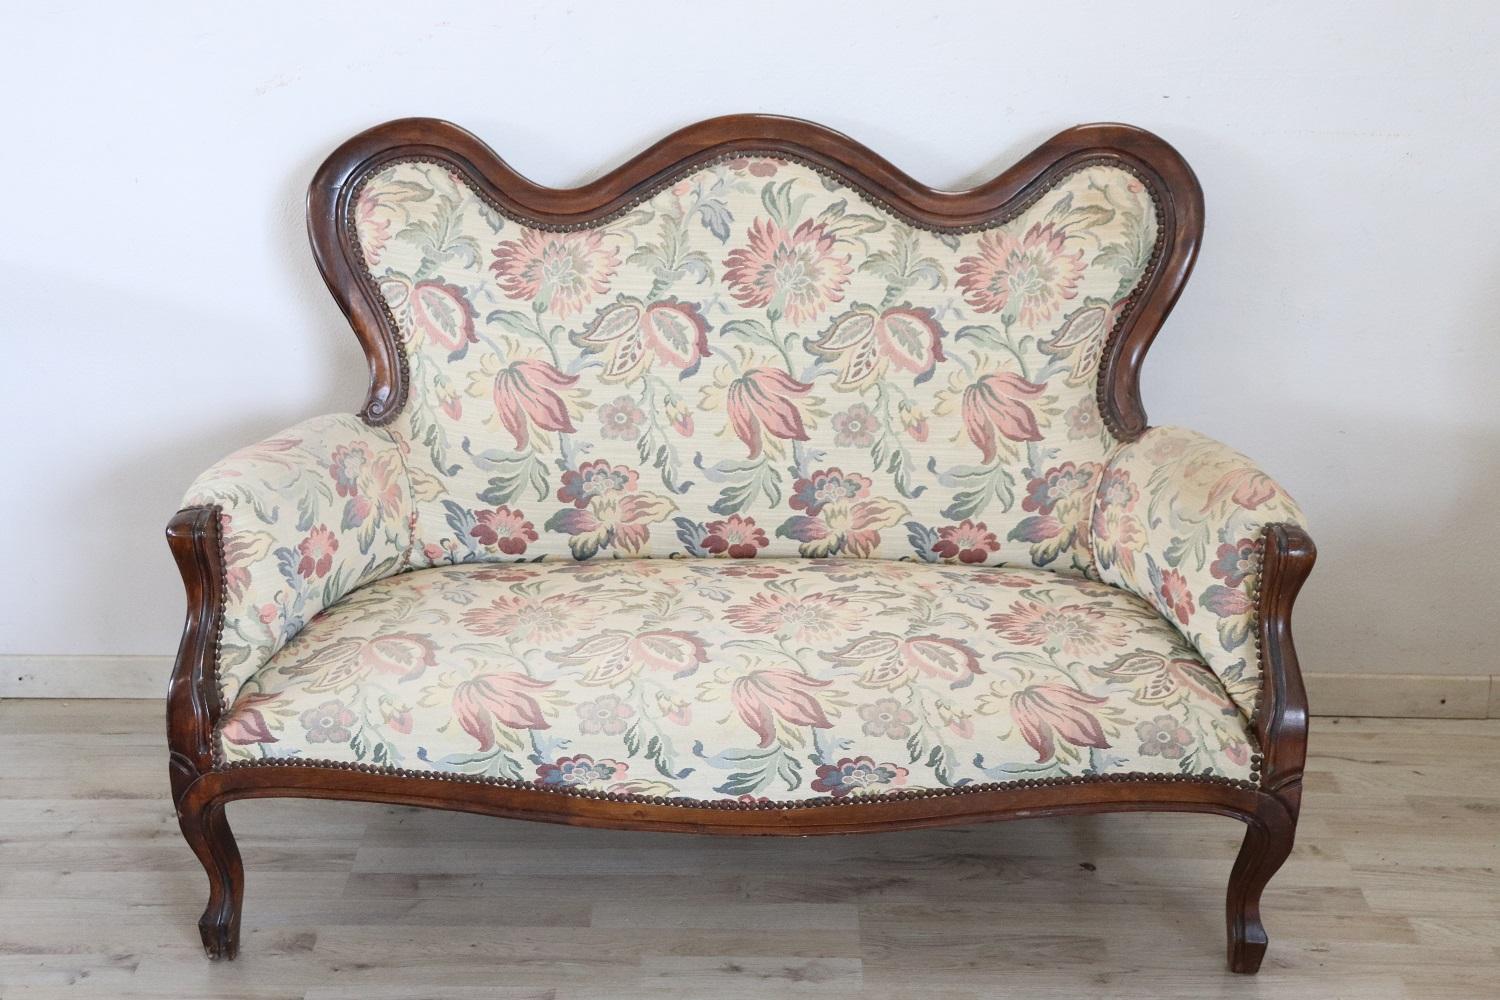 Seltene komplette italienische Luxus Louis Philippe-Stil 1930er Jahre Wohnzimmer-Set umfasst:
1 Sofa
1 Sessel

Raffiniertes Wohnzimmerset aus Nussbaumholz. Das Wohnzimmer stammt aus einer bedeutenden italienischen Villa und verschönert den Raum